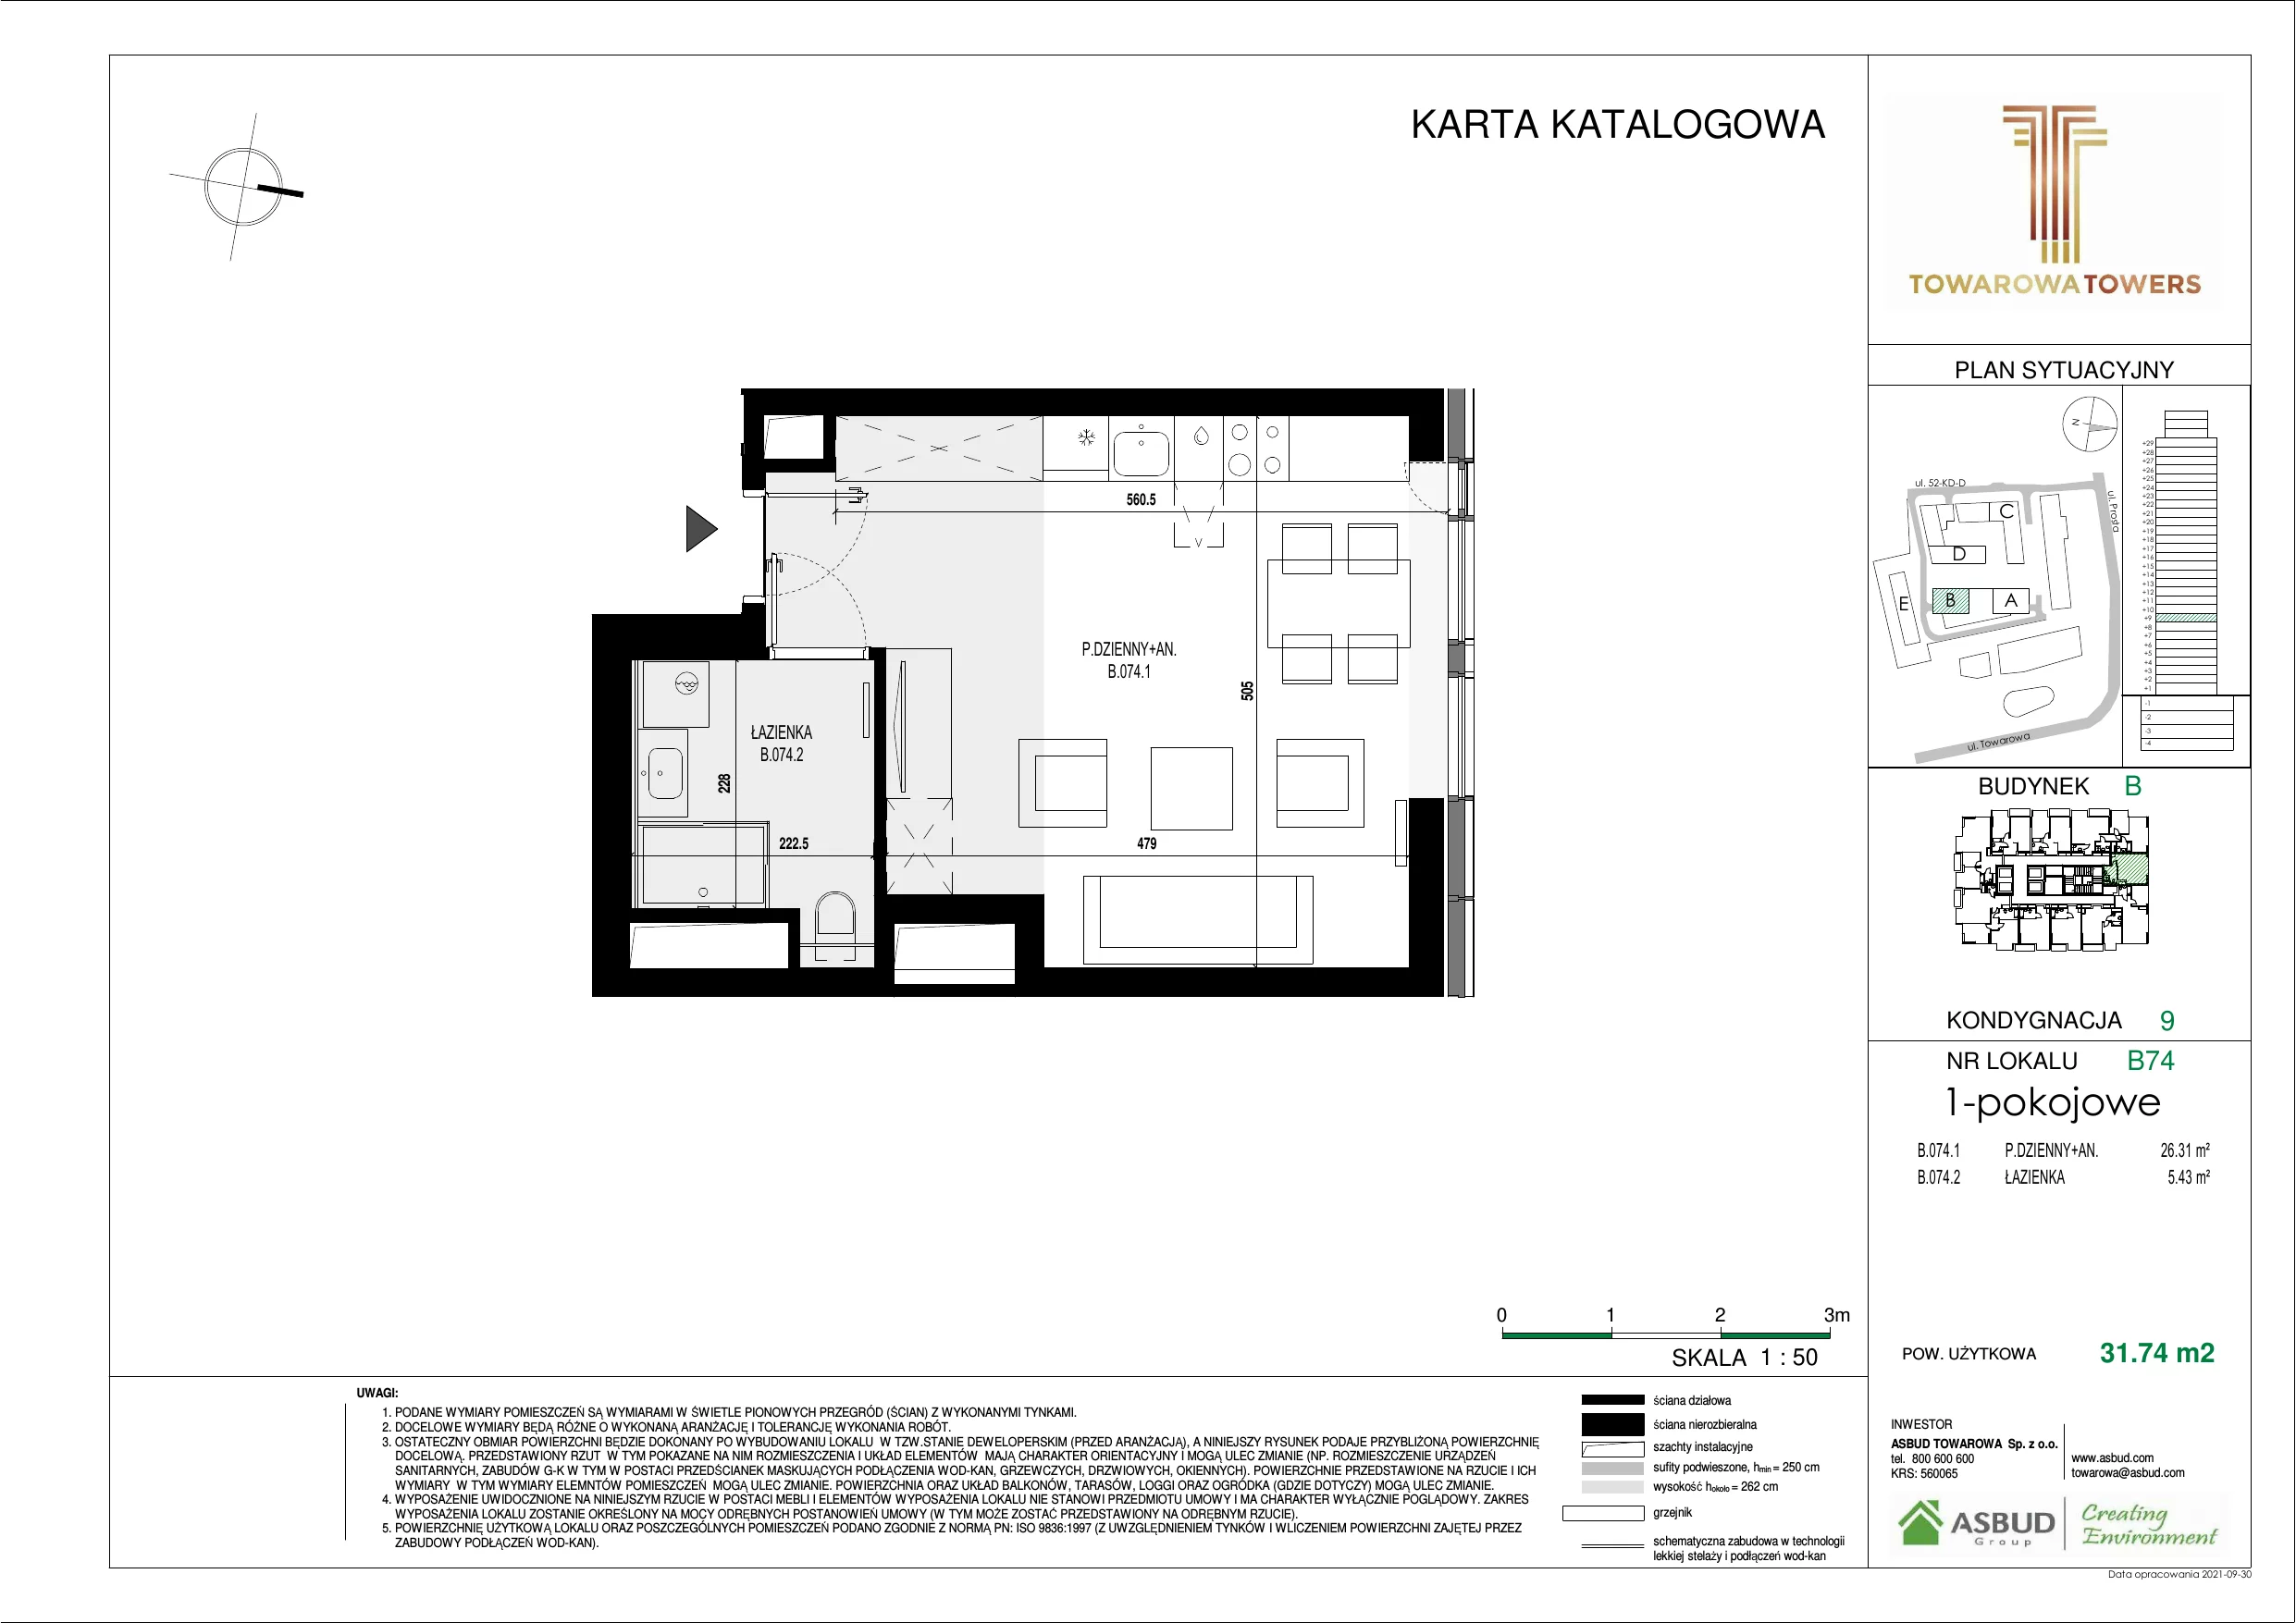 Mieszkanie 31,74 m², piętro 9, oferta nr B.074, Towarowa Towers, Warszawa, Wola, Czyste, ul. Towarowa